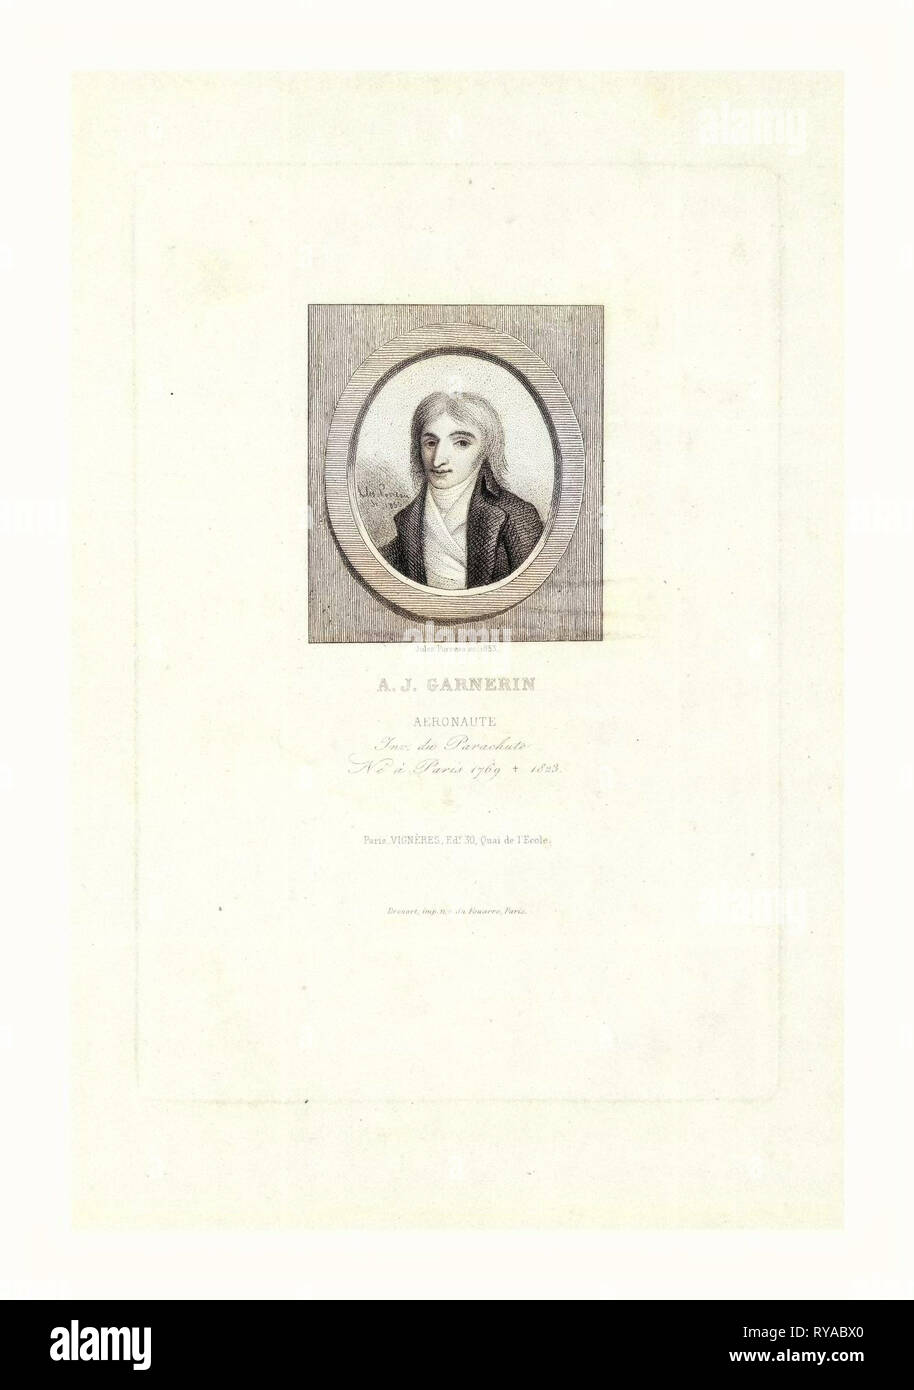 A.J. Garnerin, luftschiffer von Jules Porreau, 1853 Stockfoto